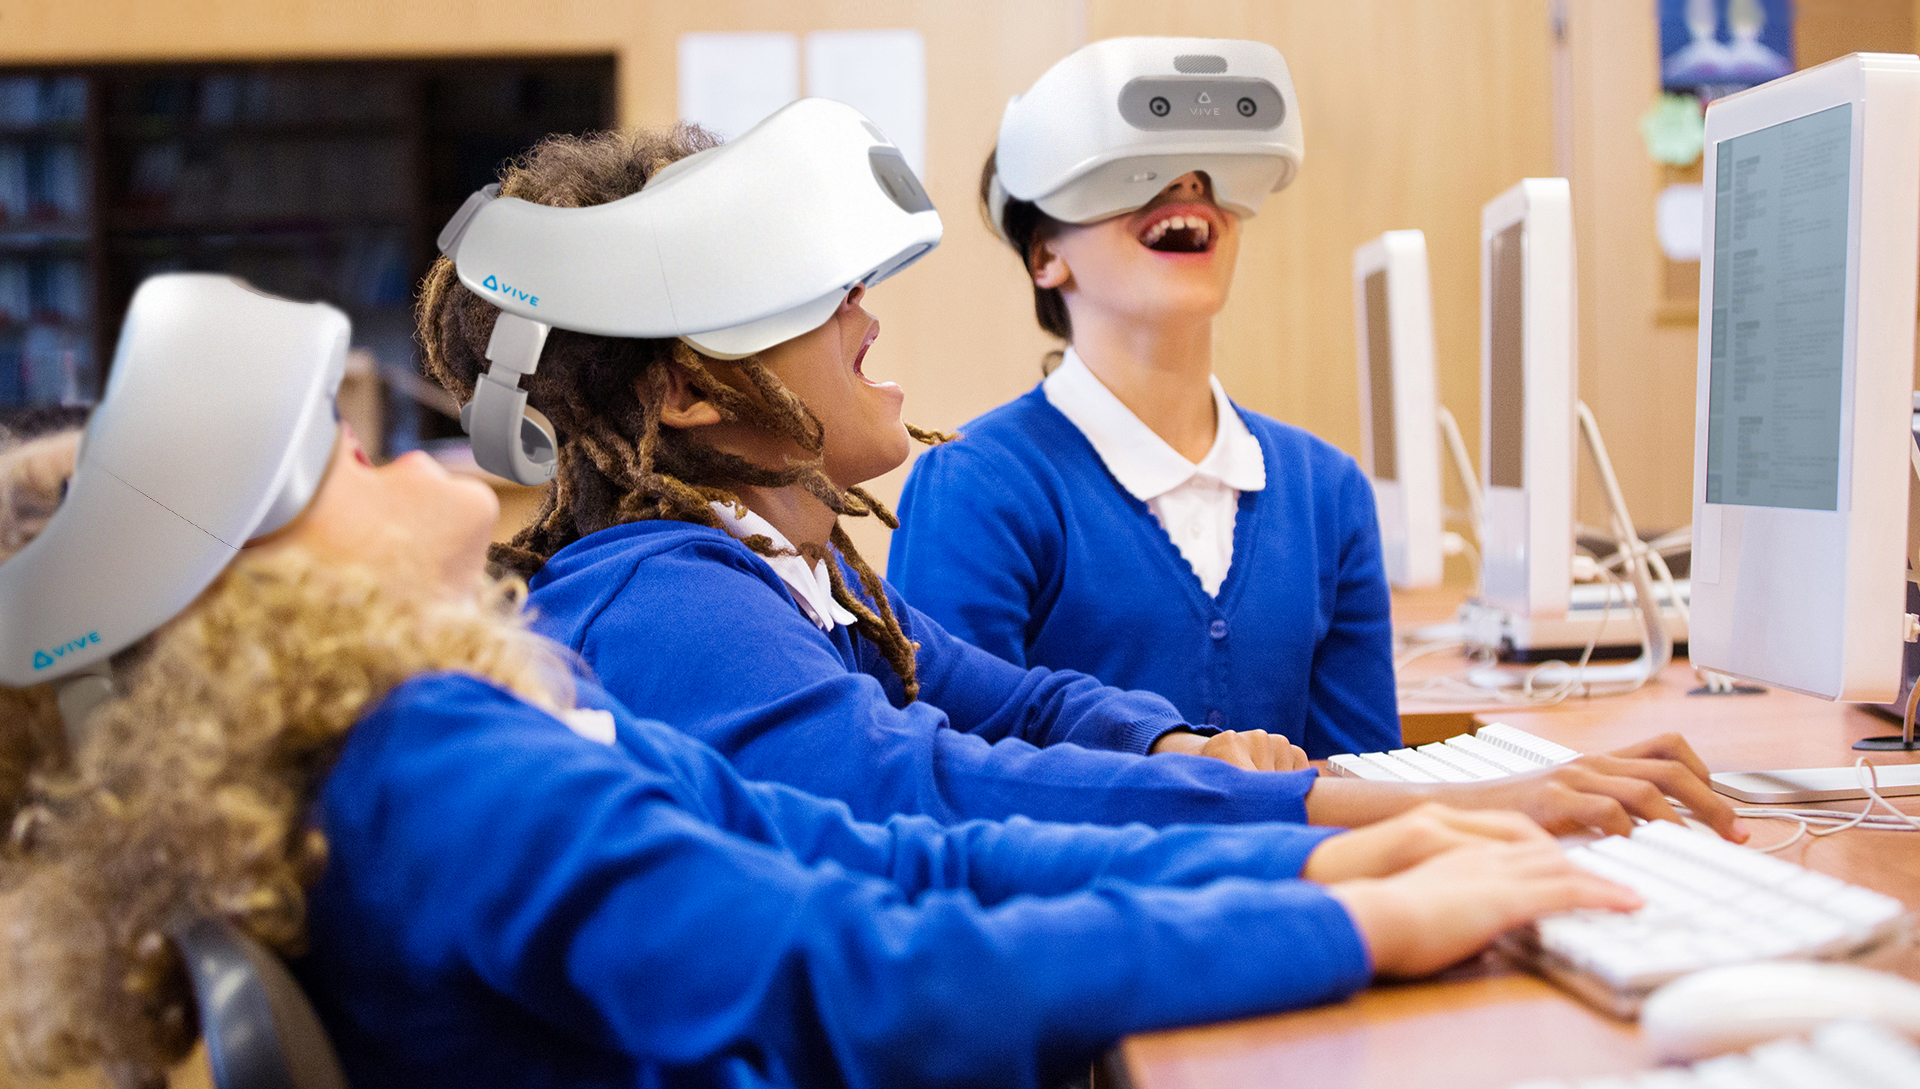 Будет уроком на будущее. Информационные технологии в учебе. Виртуальная реальность в учебе. Технологии виртуальной реальности в образовании. Виртуальная реальность дети.